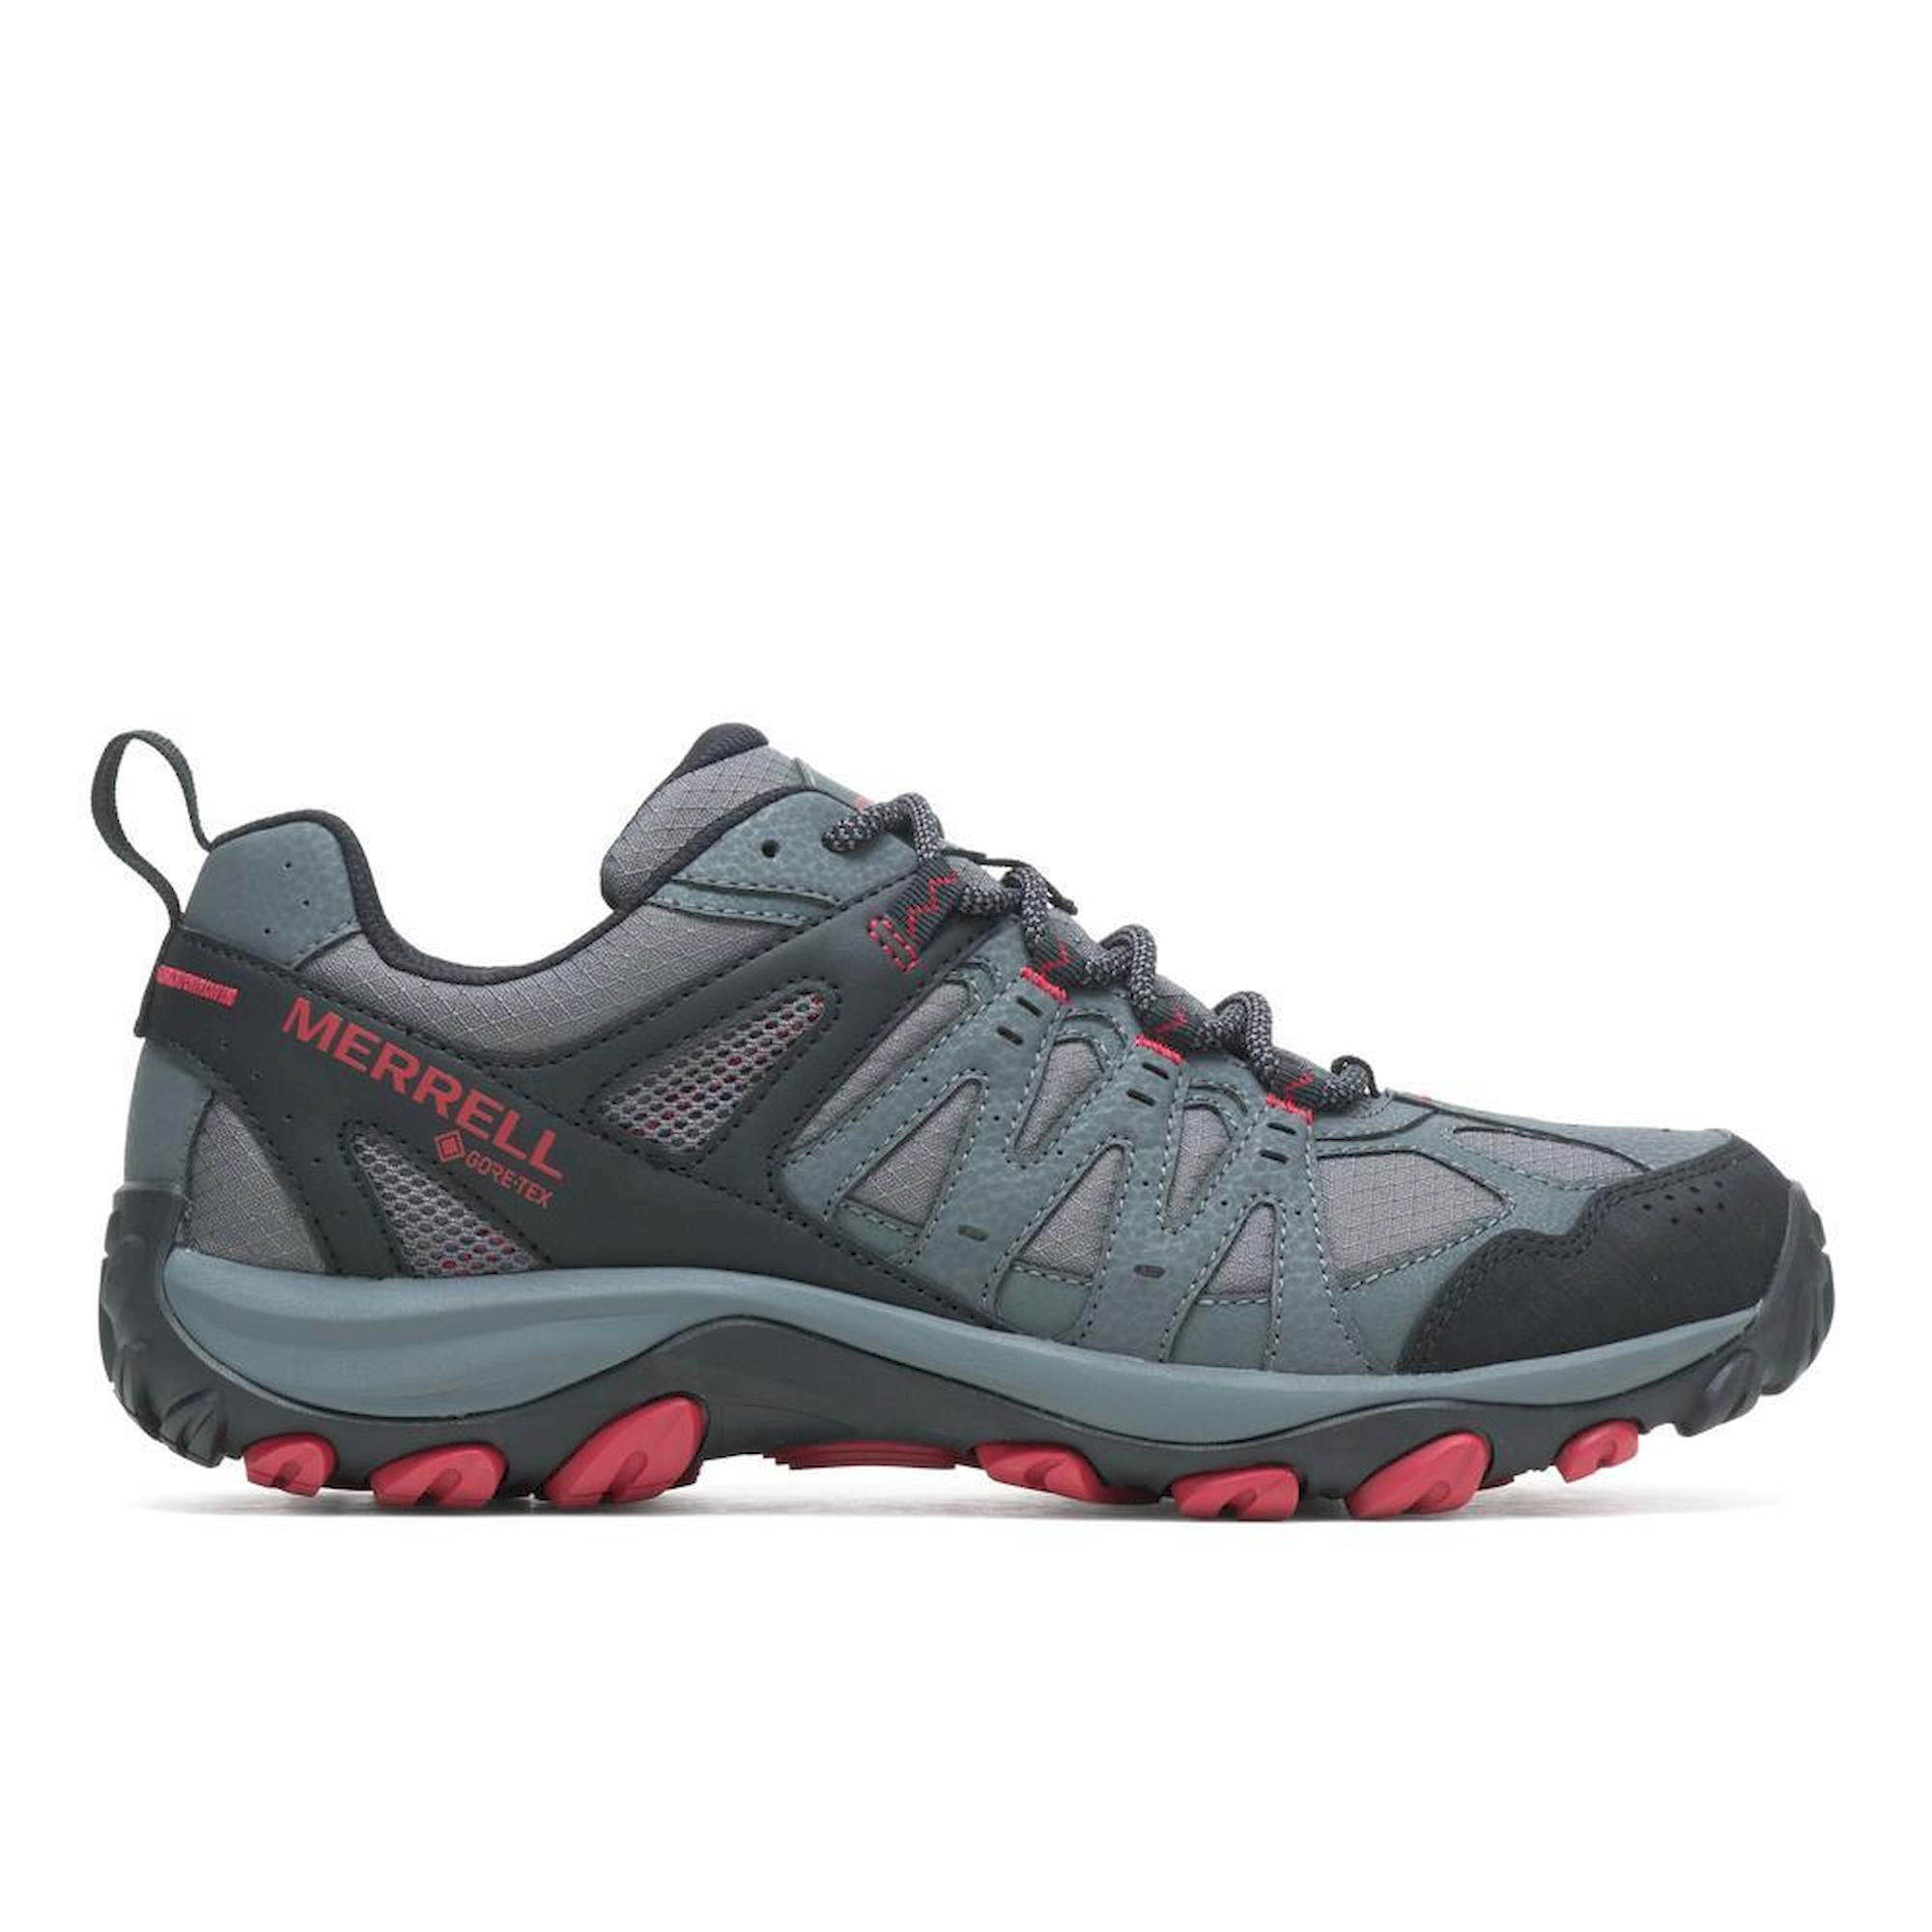 Merrell Accentor 3 Sport GTX - Hiking shoes - Men's